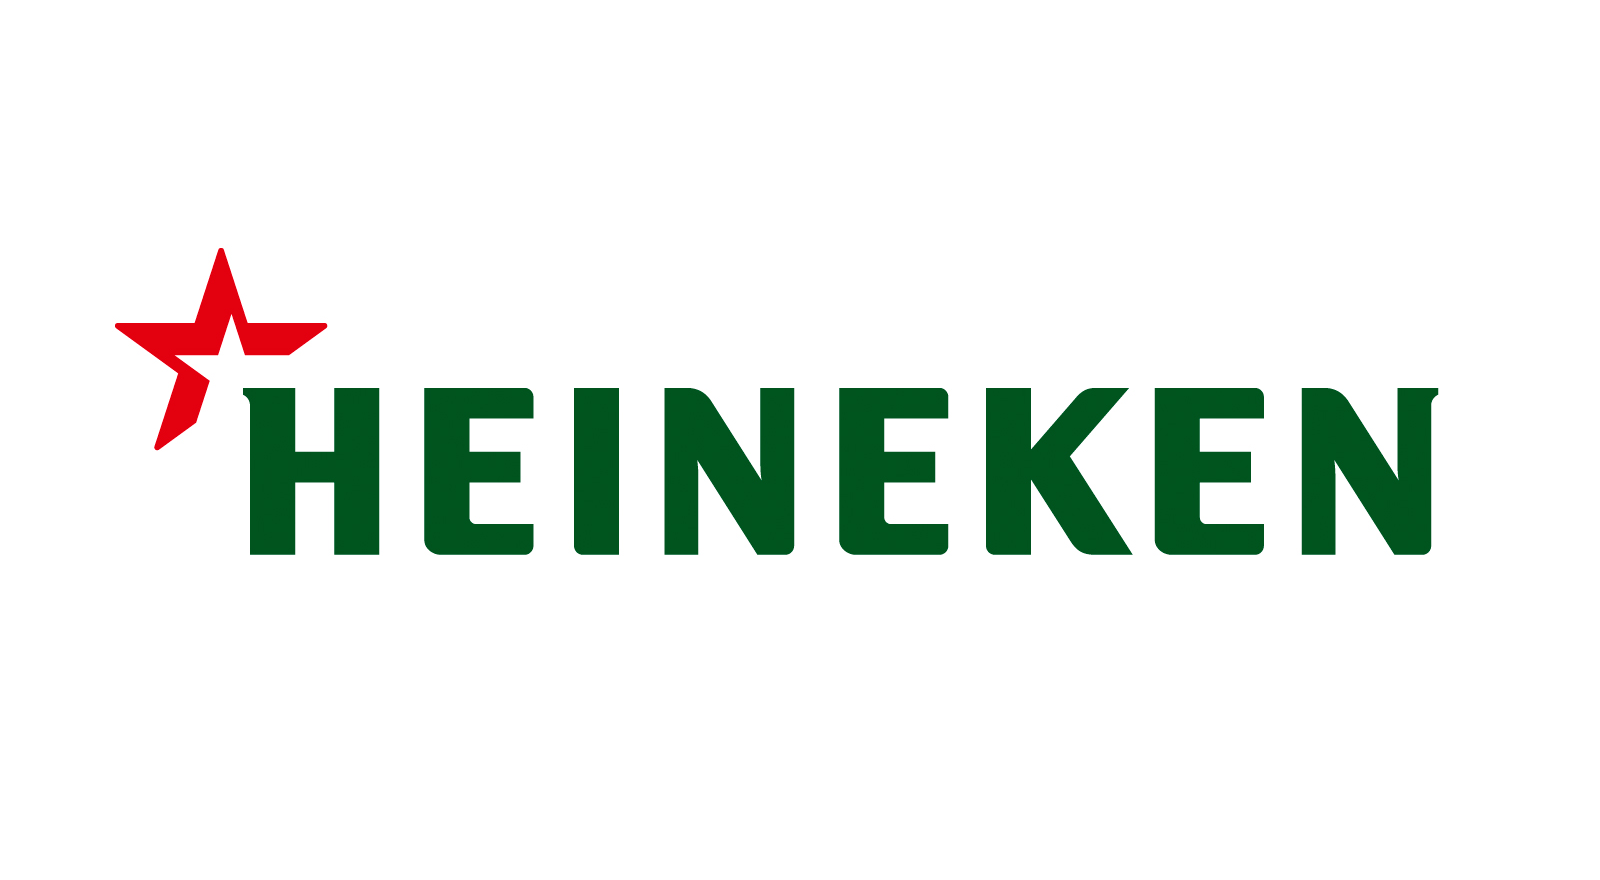 logo_heineken